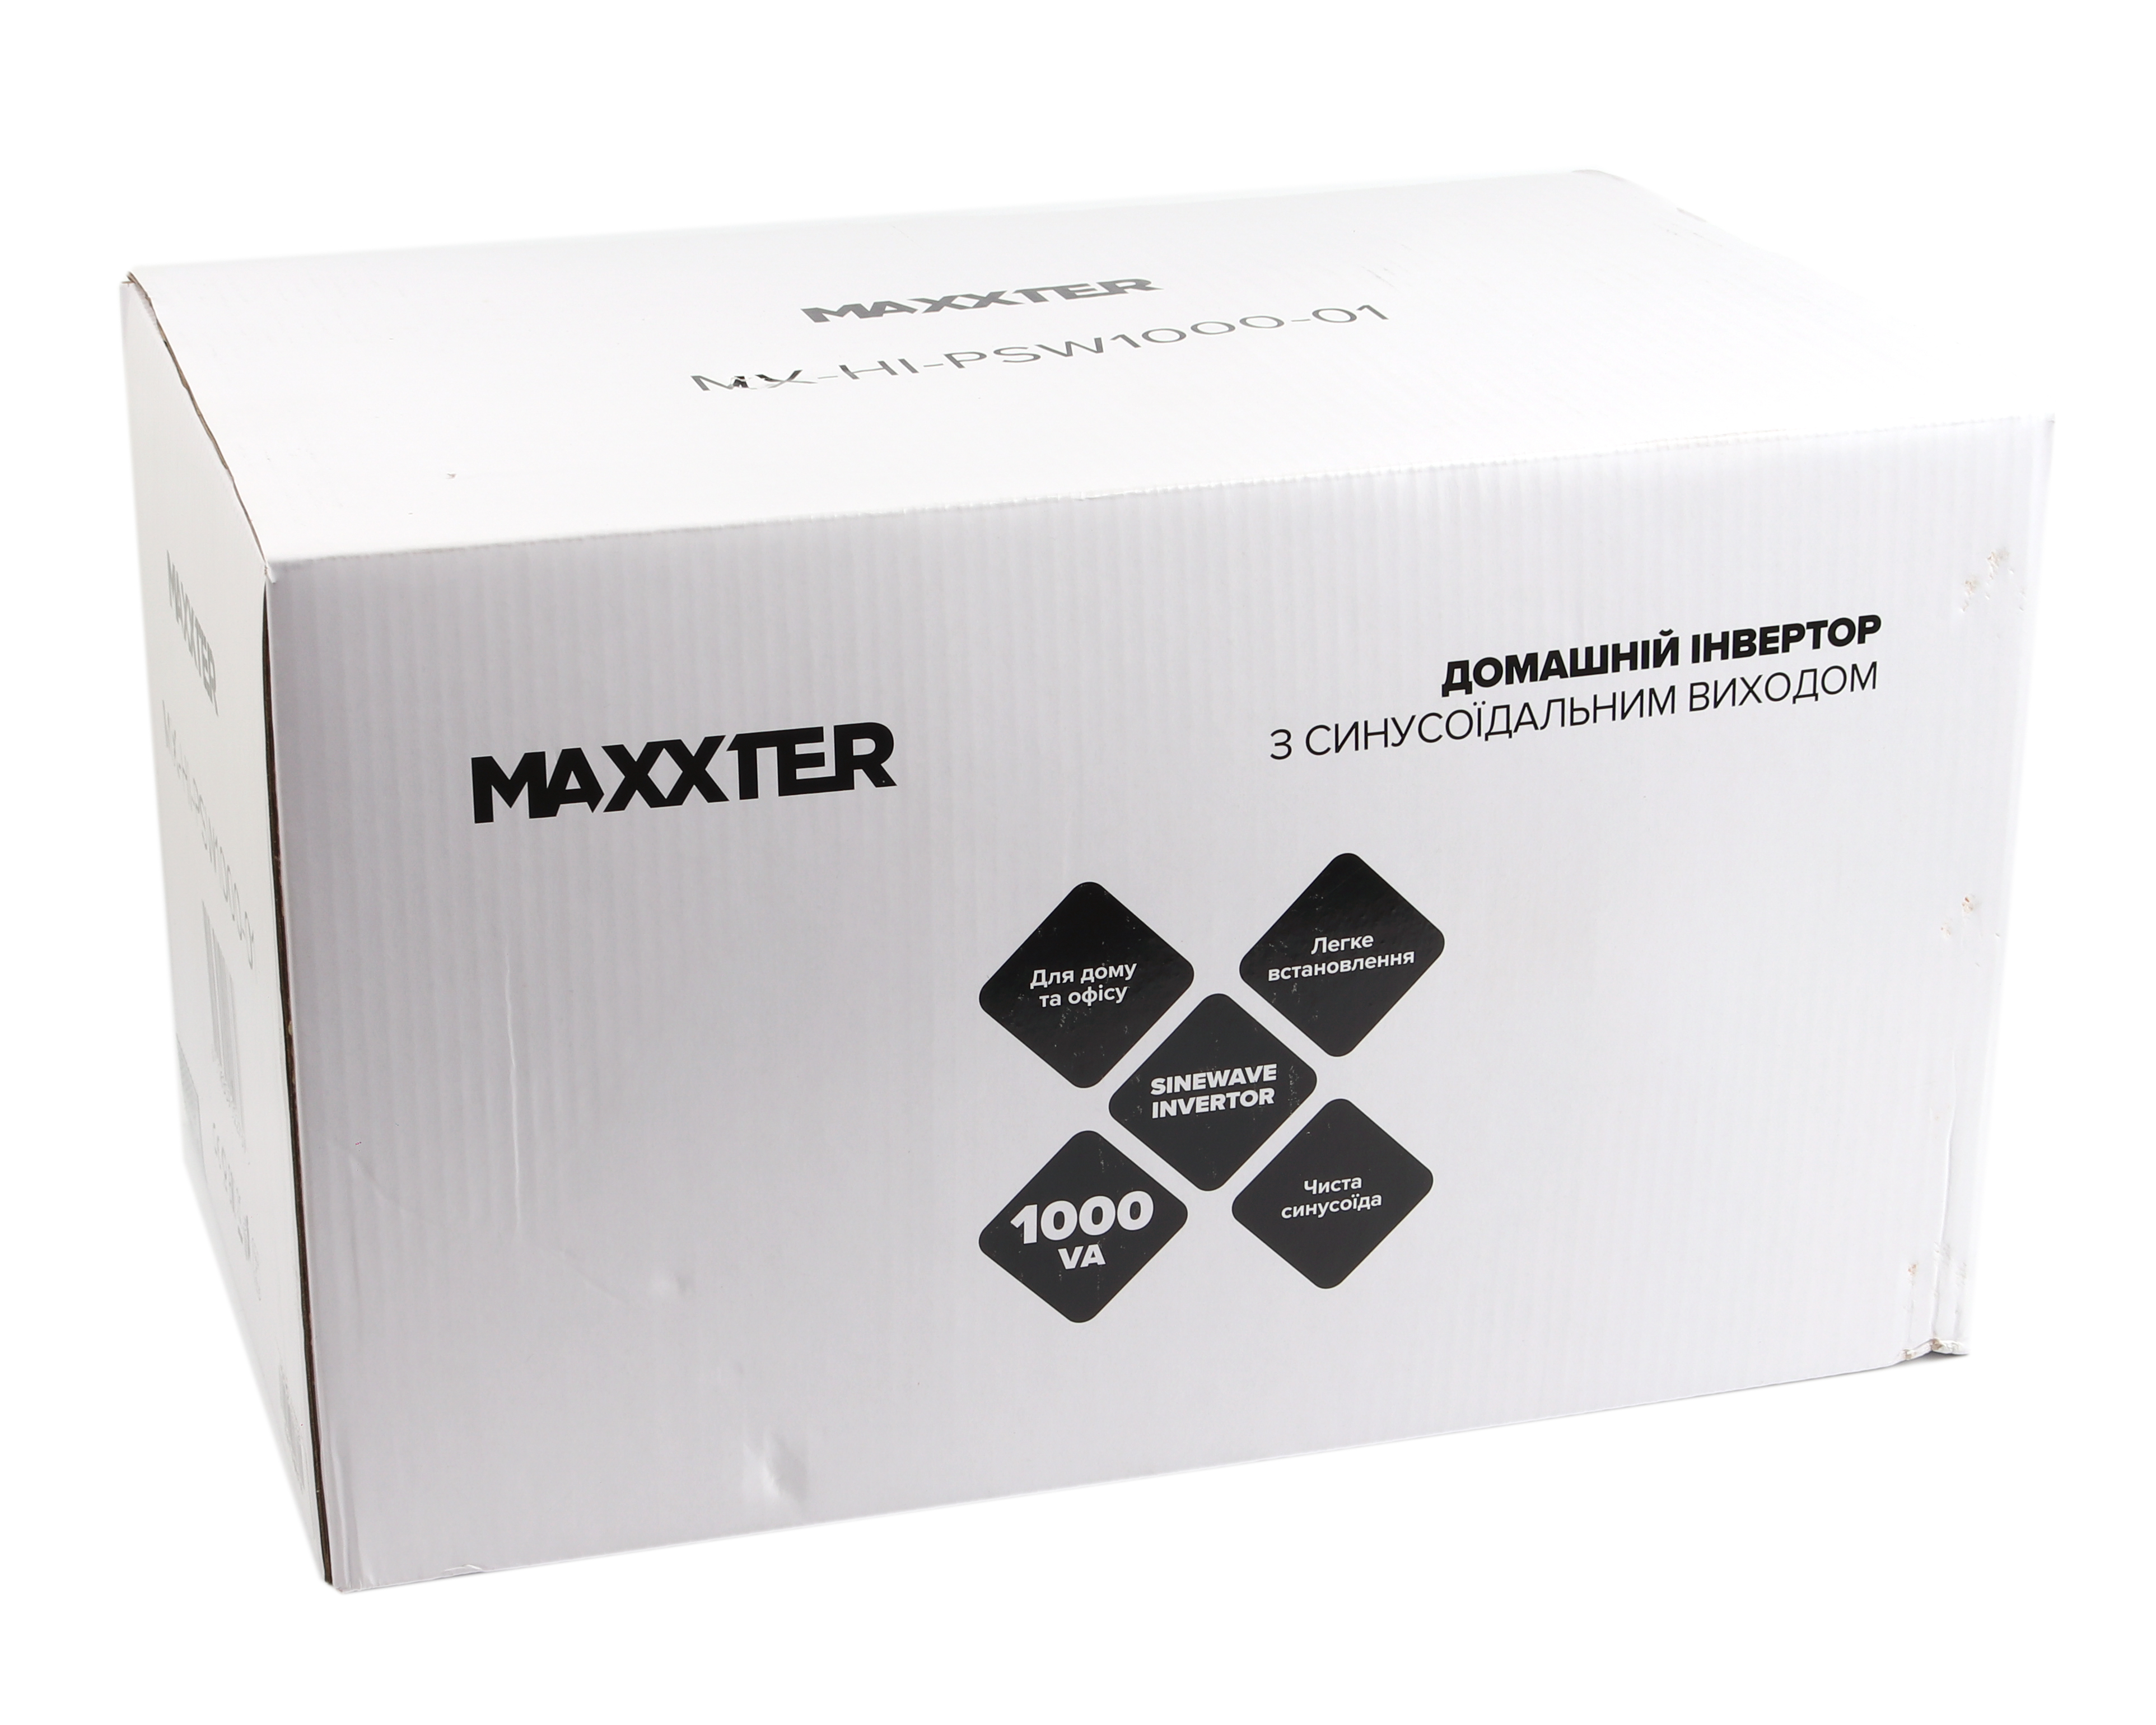 Источник бесперебойного питания Maxxter MX-HI-PSW1000-01 отзывы - изображения 5